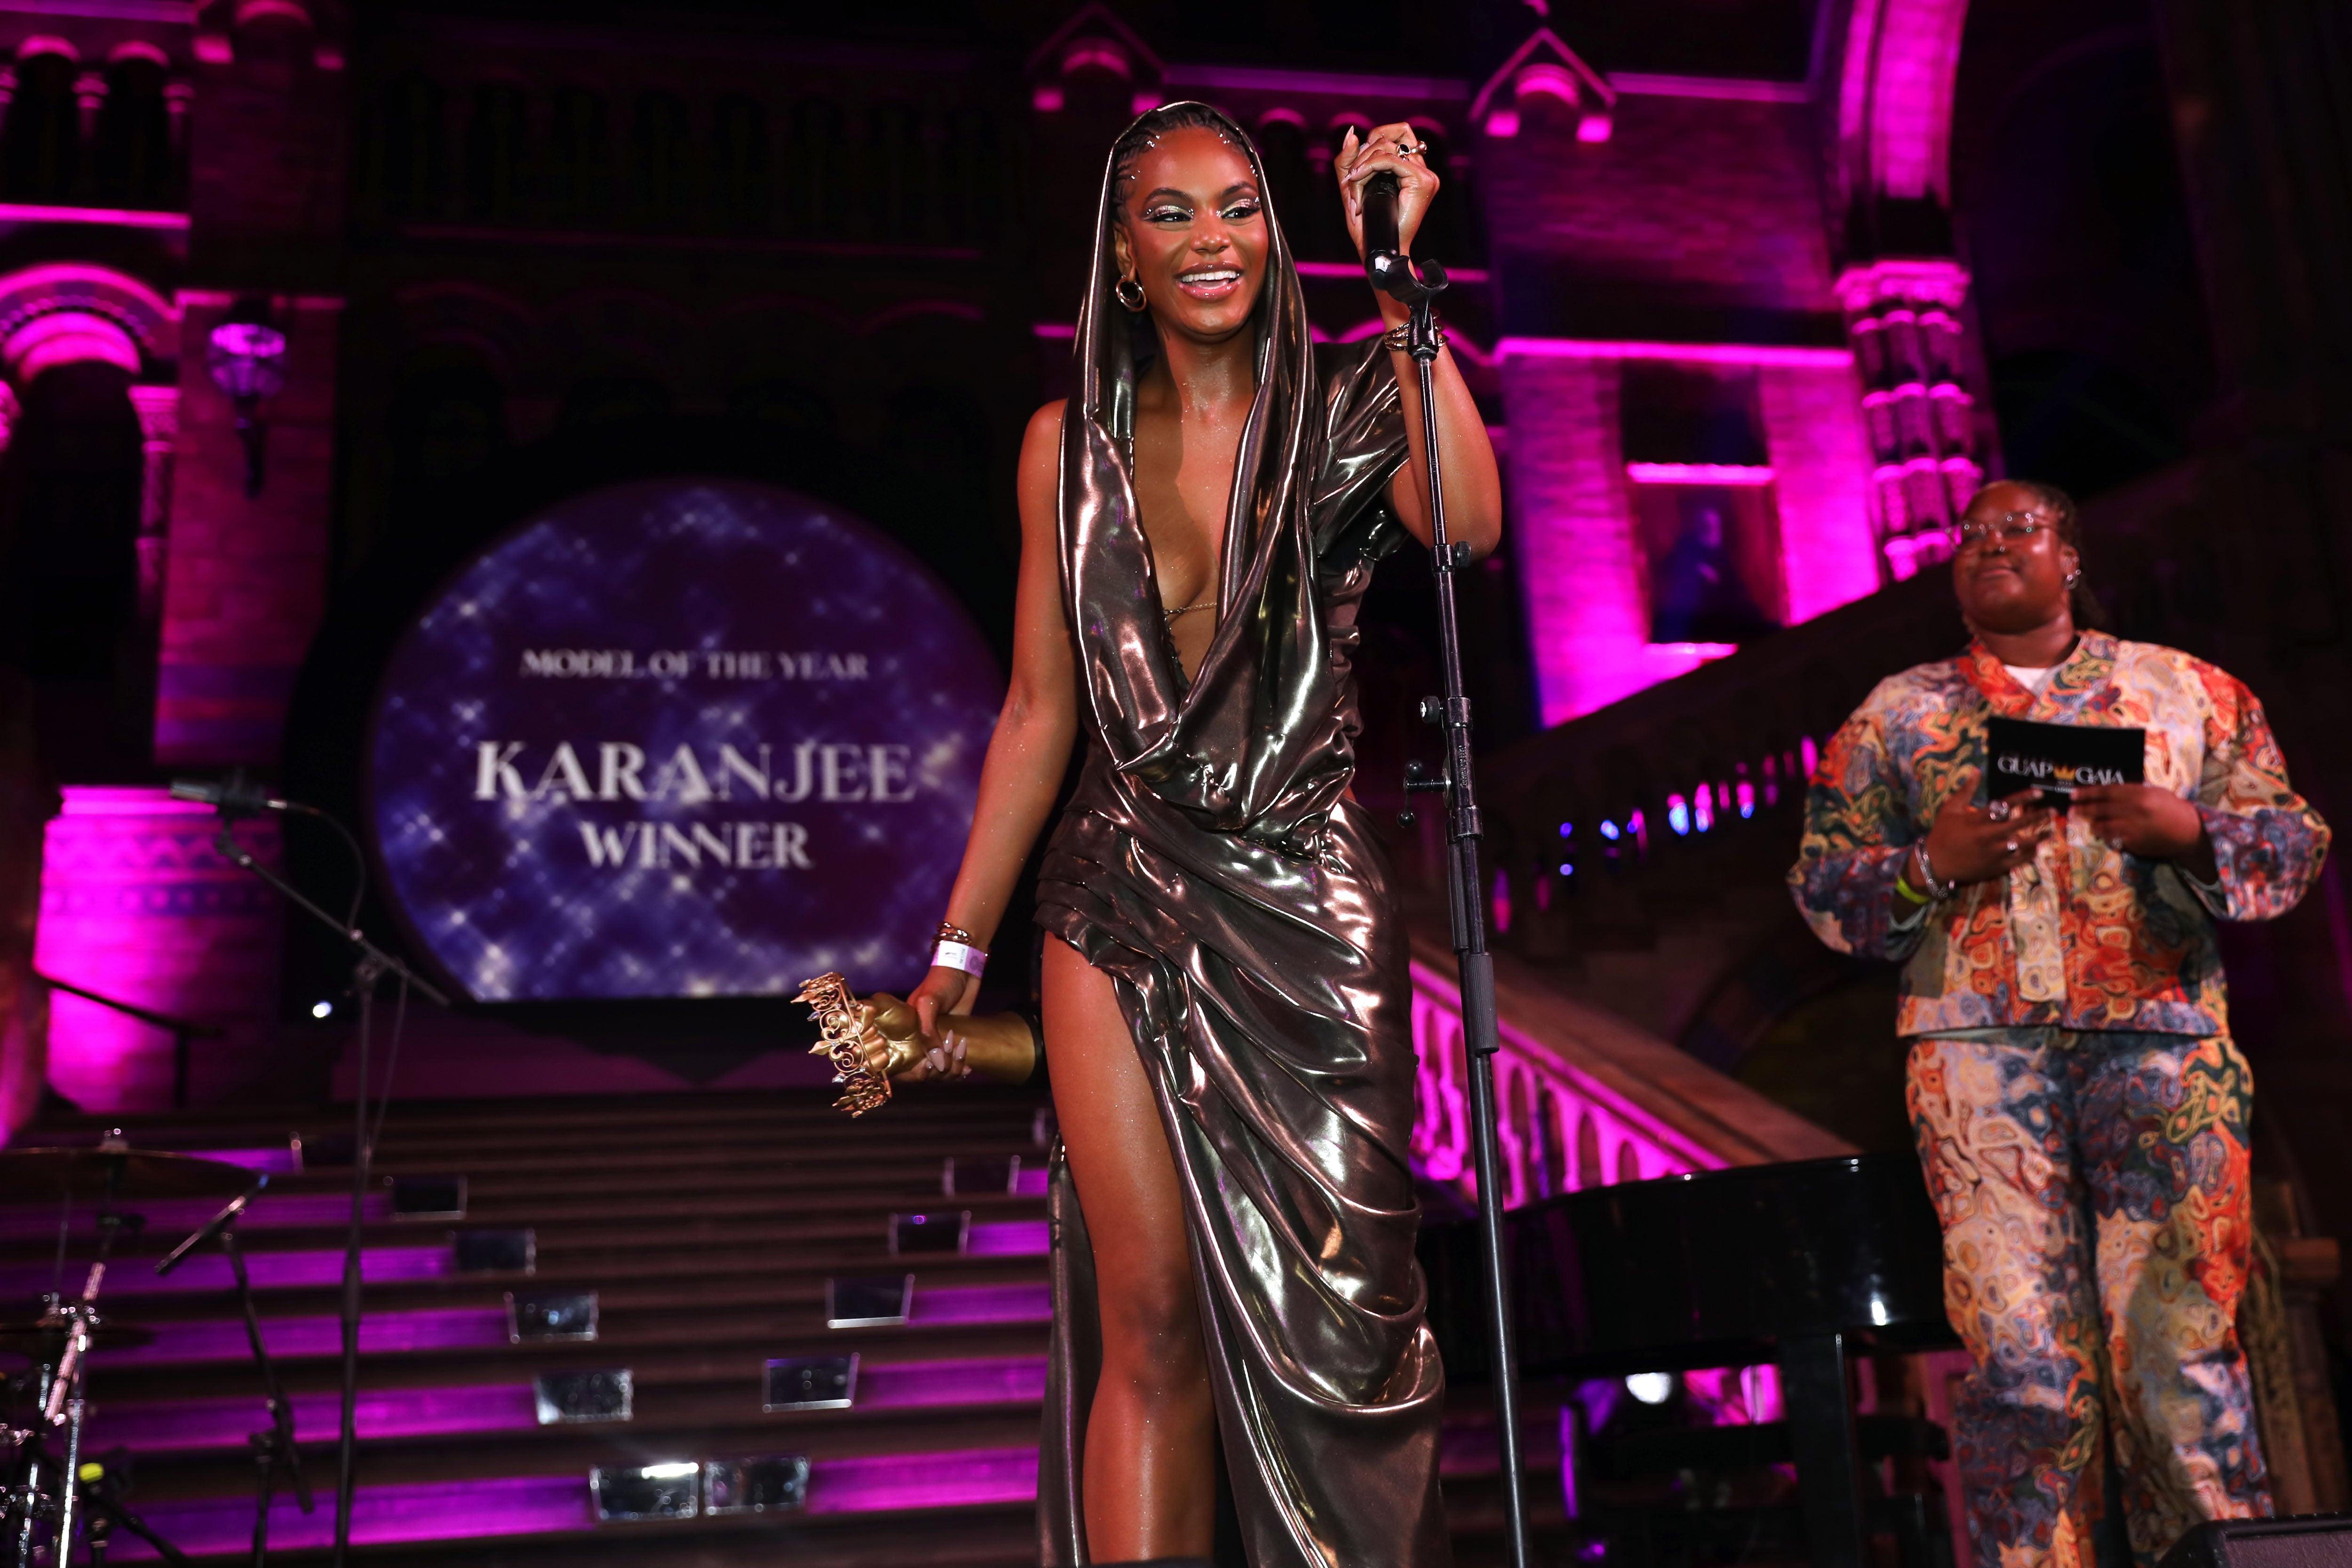 Karanjee, ‘Model of The Year’ winner at GUAP Gala 2023